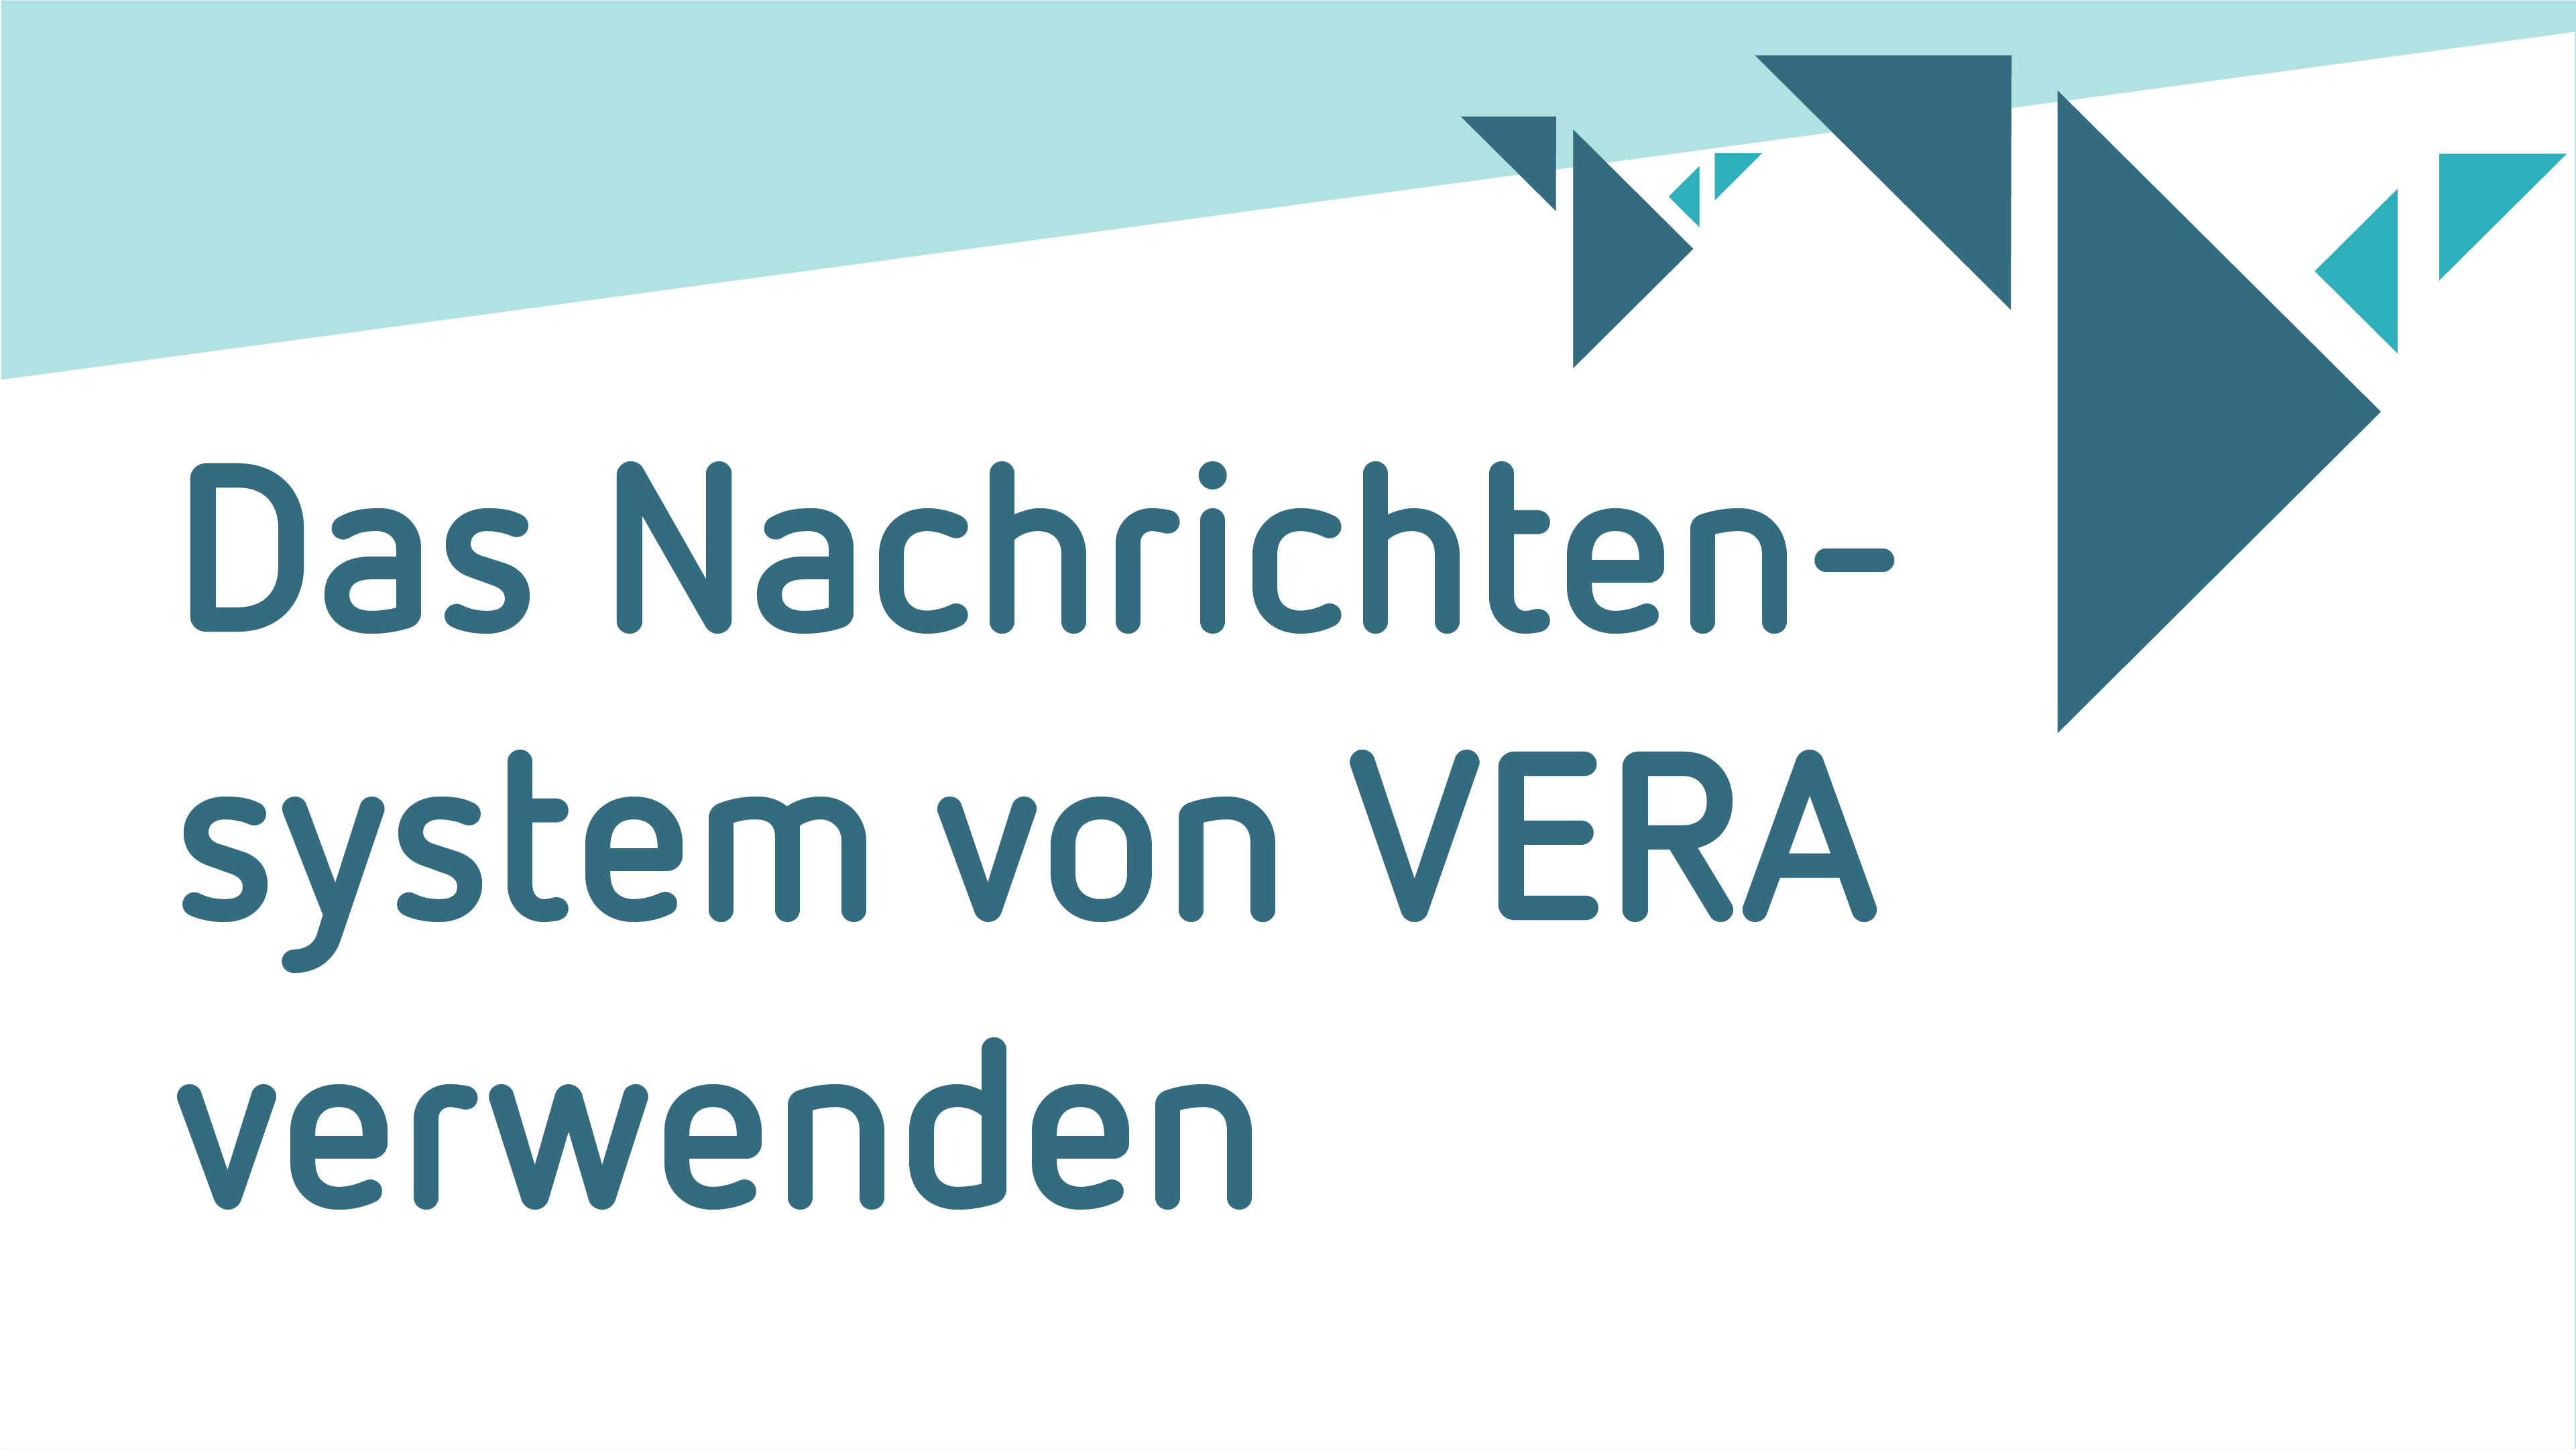 Das Nachrichtensystem von VERA